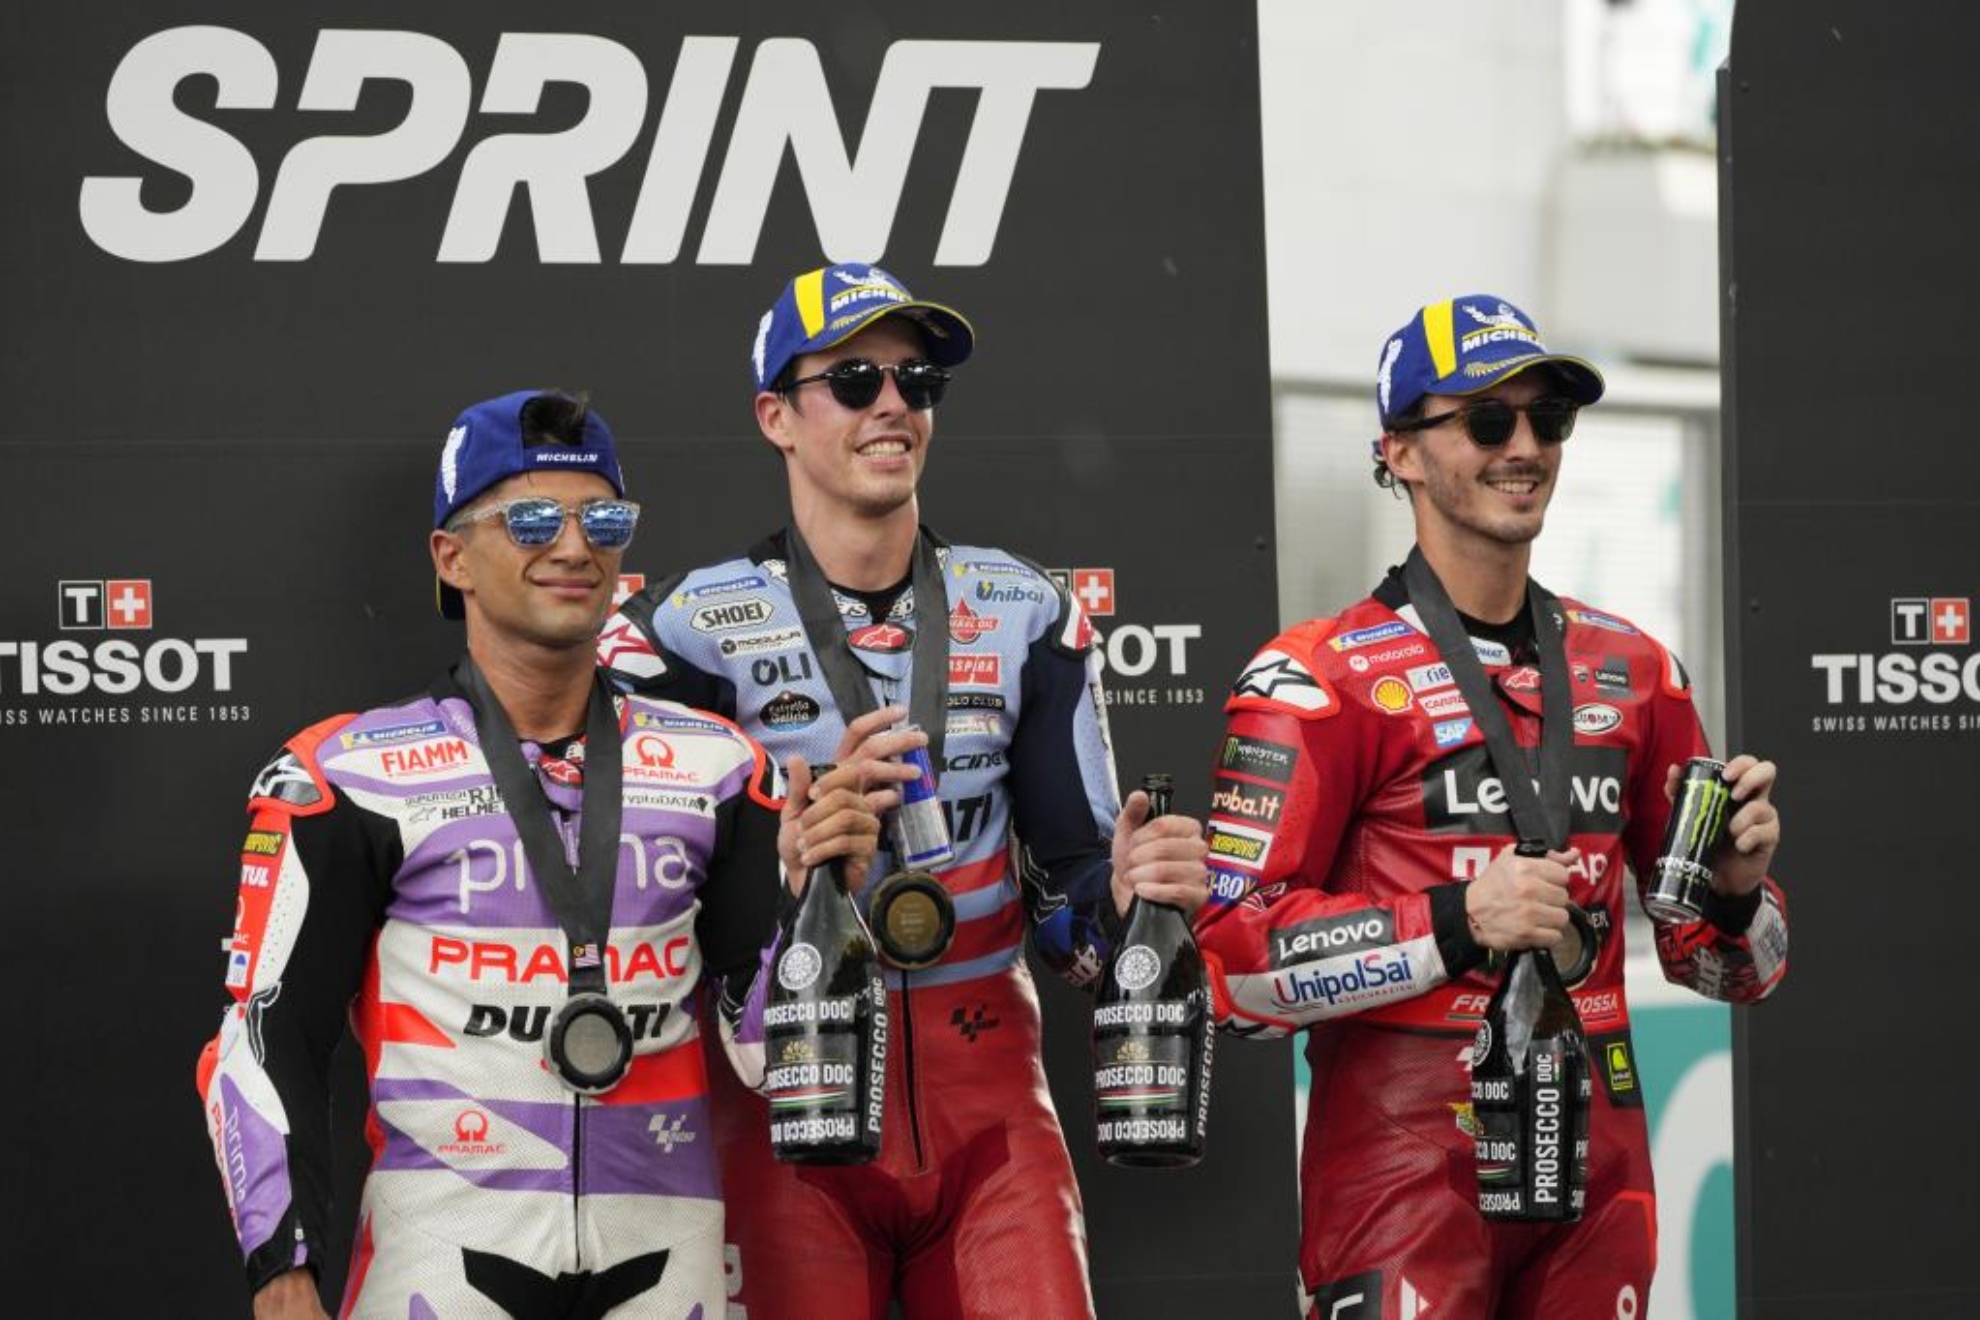 Jorge Martín, Álex Márquez y Bagnaia, en el podio del Sprint.